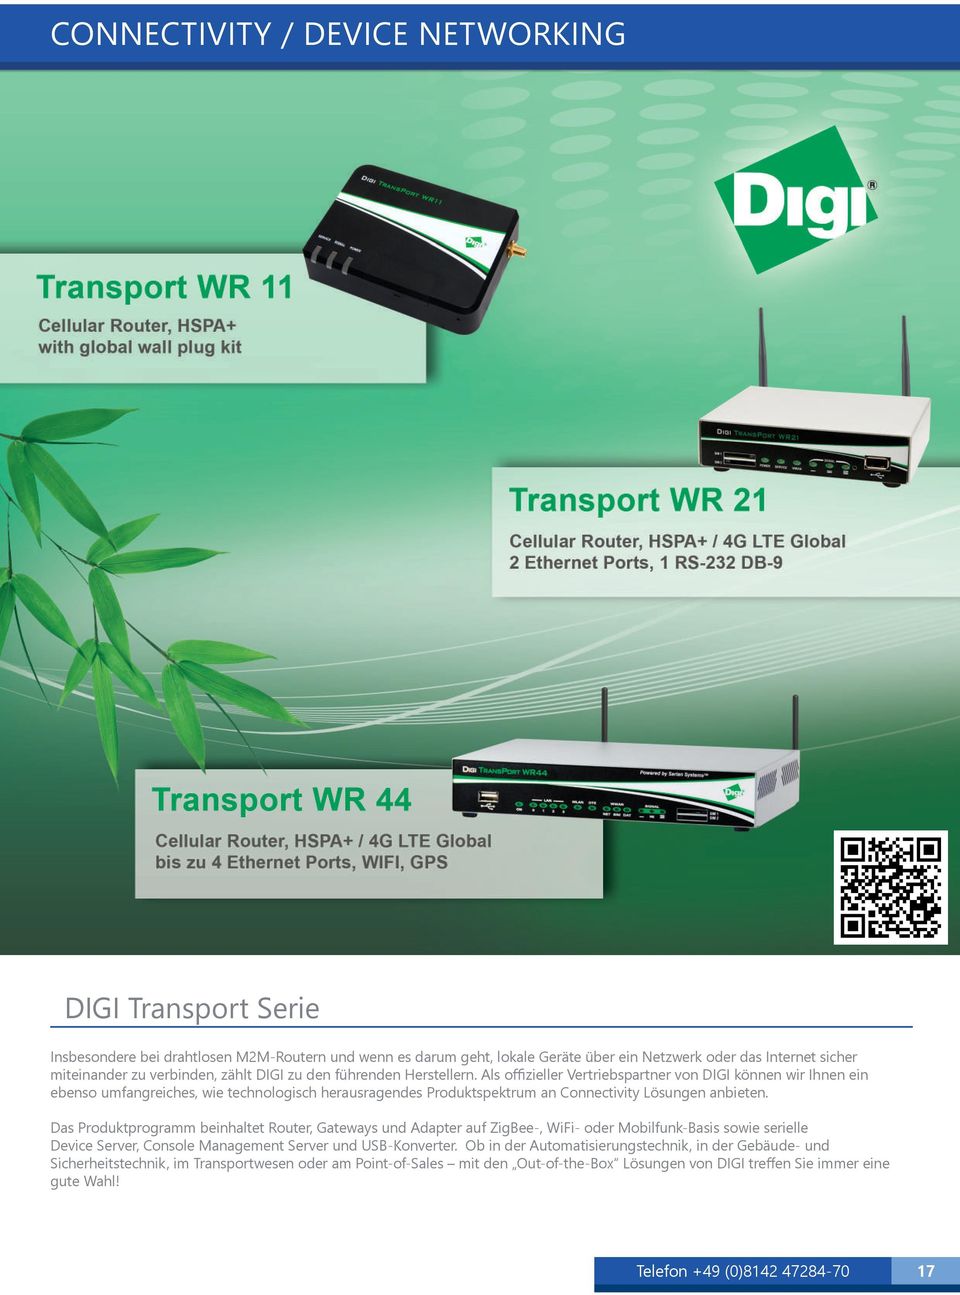 Als offizieller Vertriebspartner von DIGI können wir Ihnen ein ebenso umfangreiches, wie technologisch herausragendes Produktspektrum an Connectivity Lösungen anbieten.